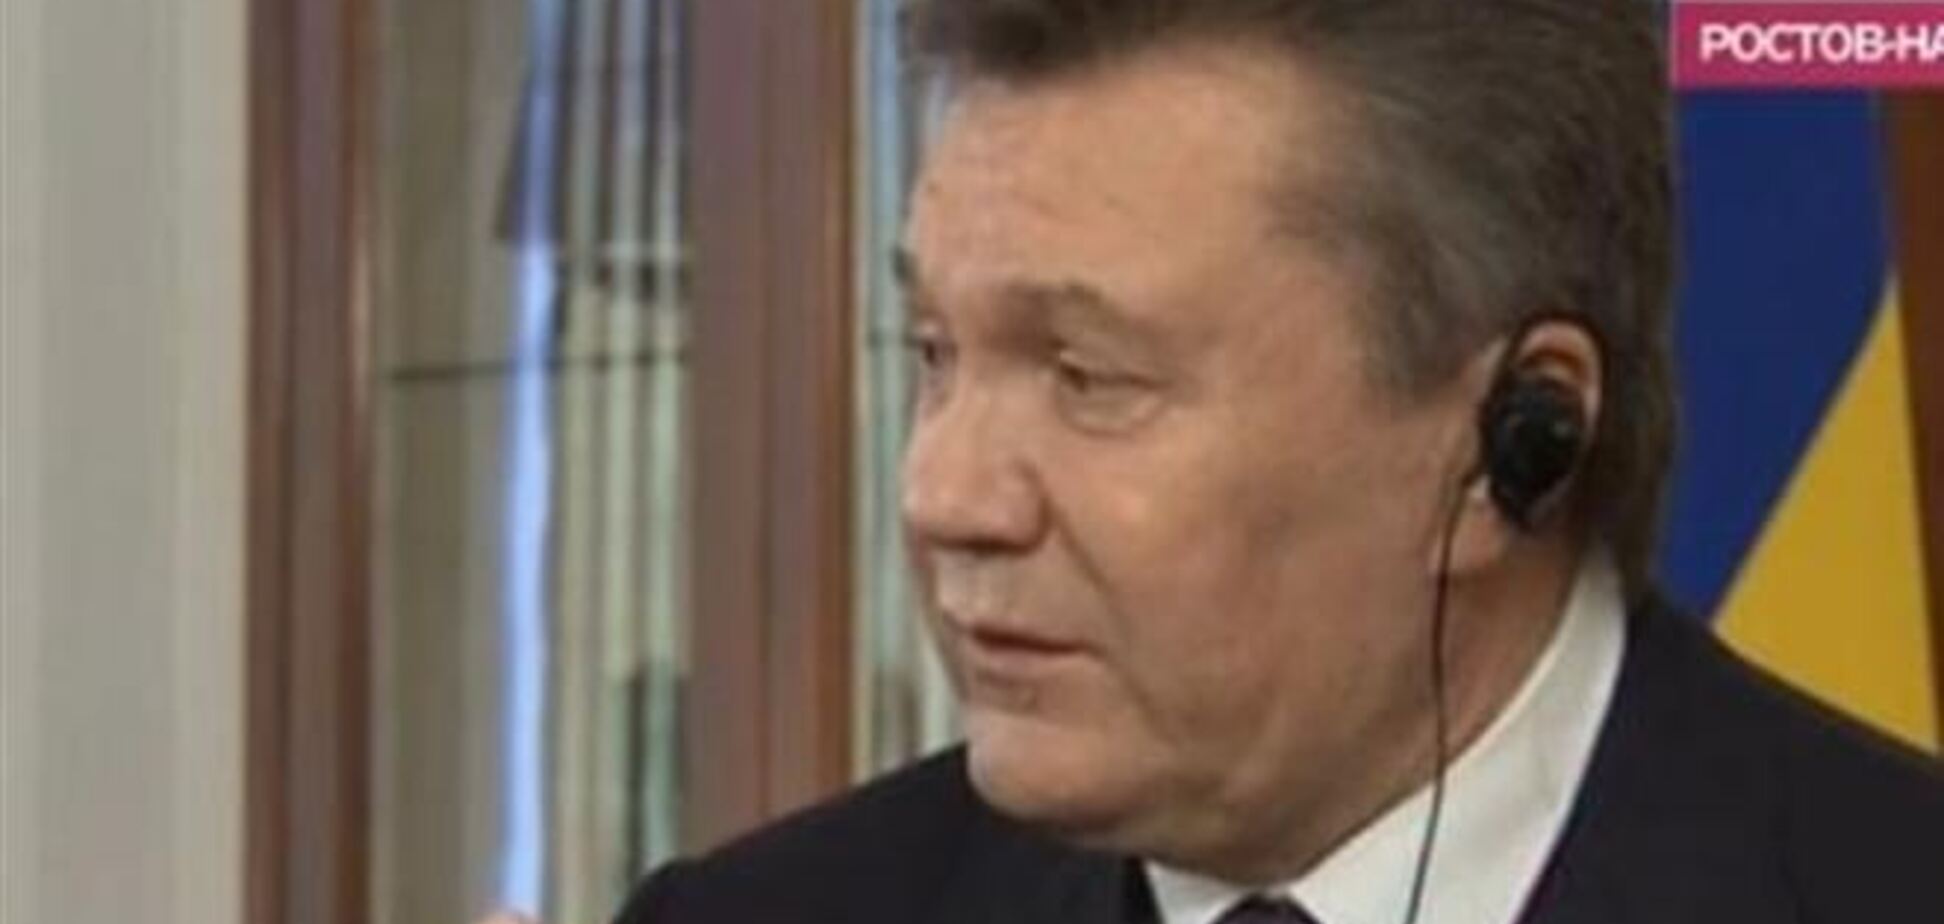 'Дождь' показал интервью Януковича. Полное видео и главные цитаты